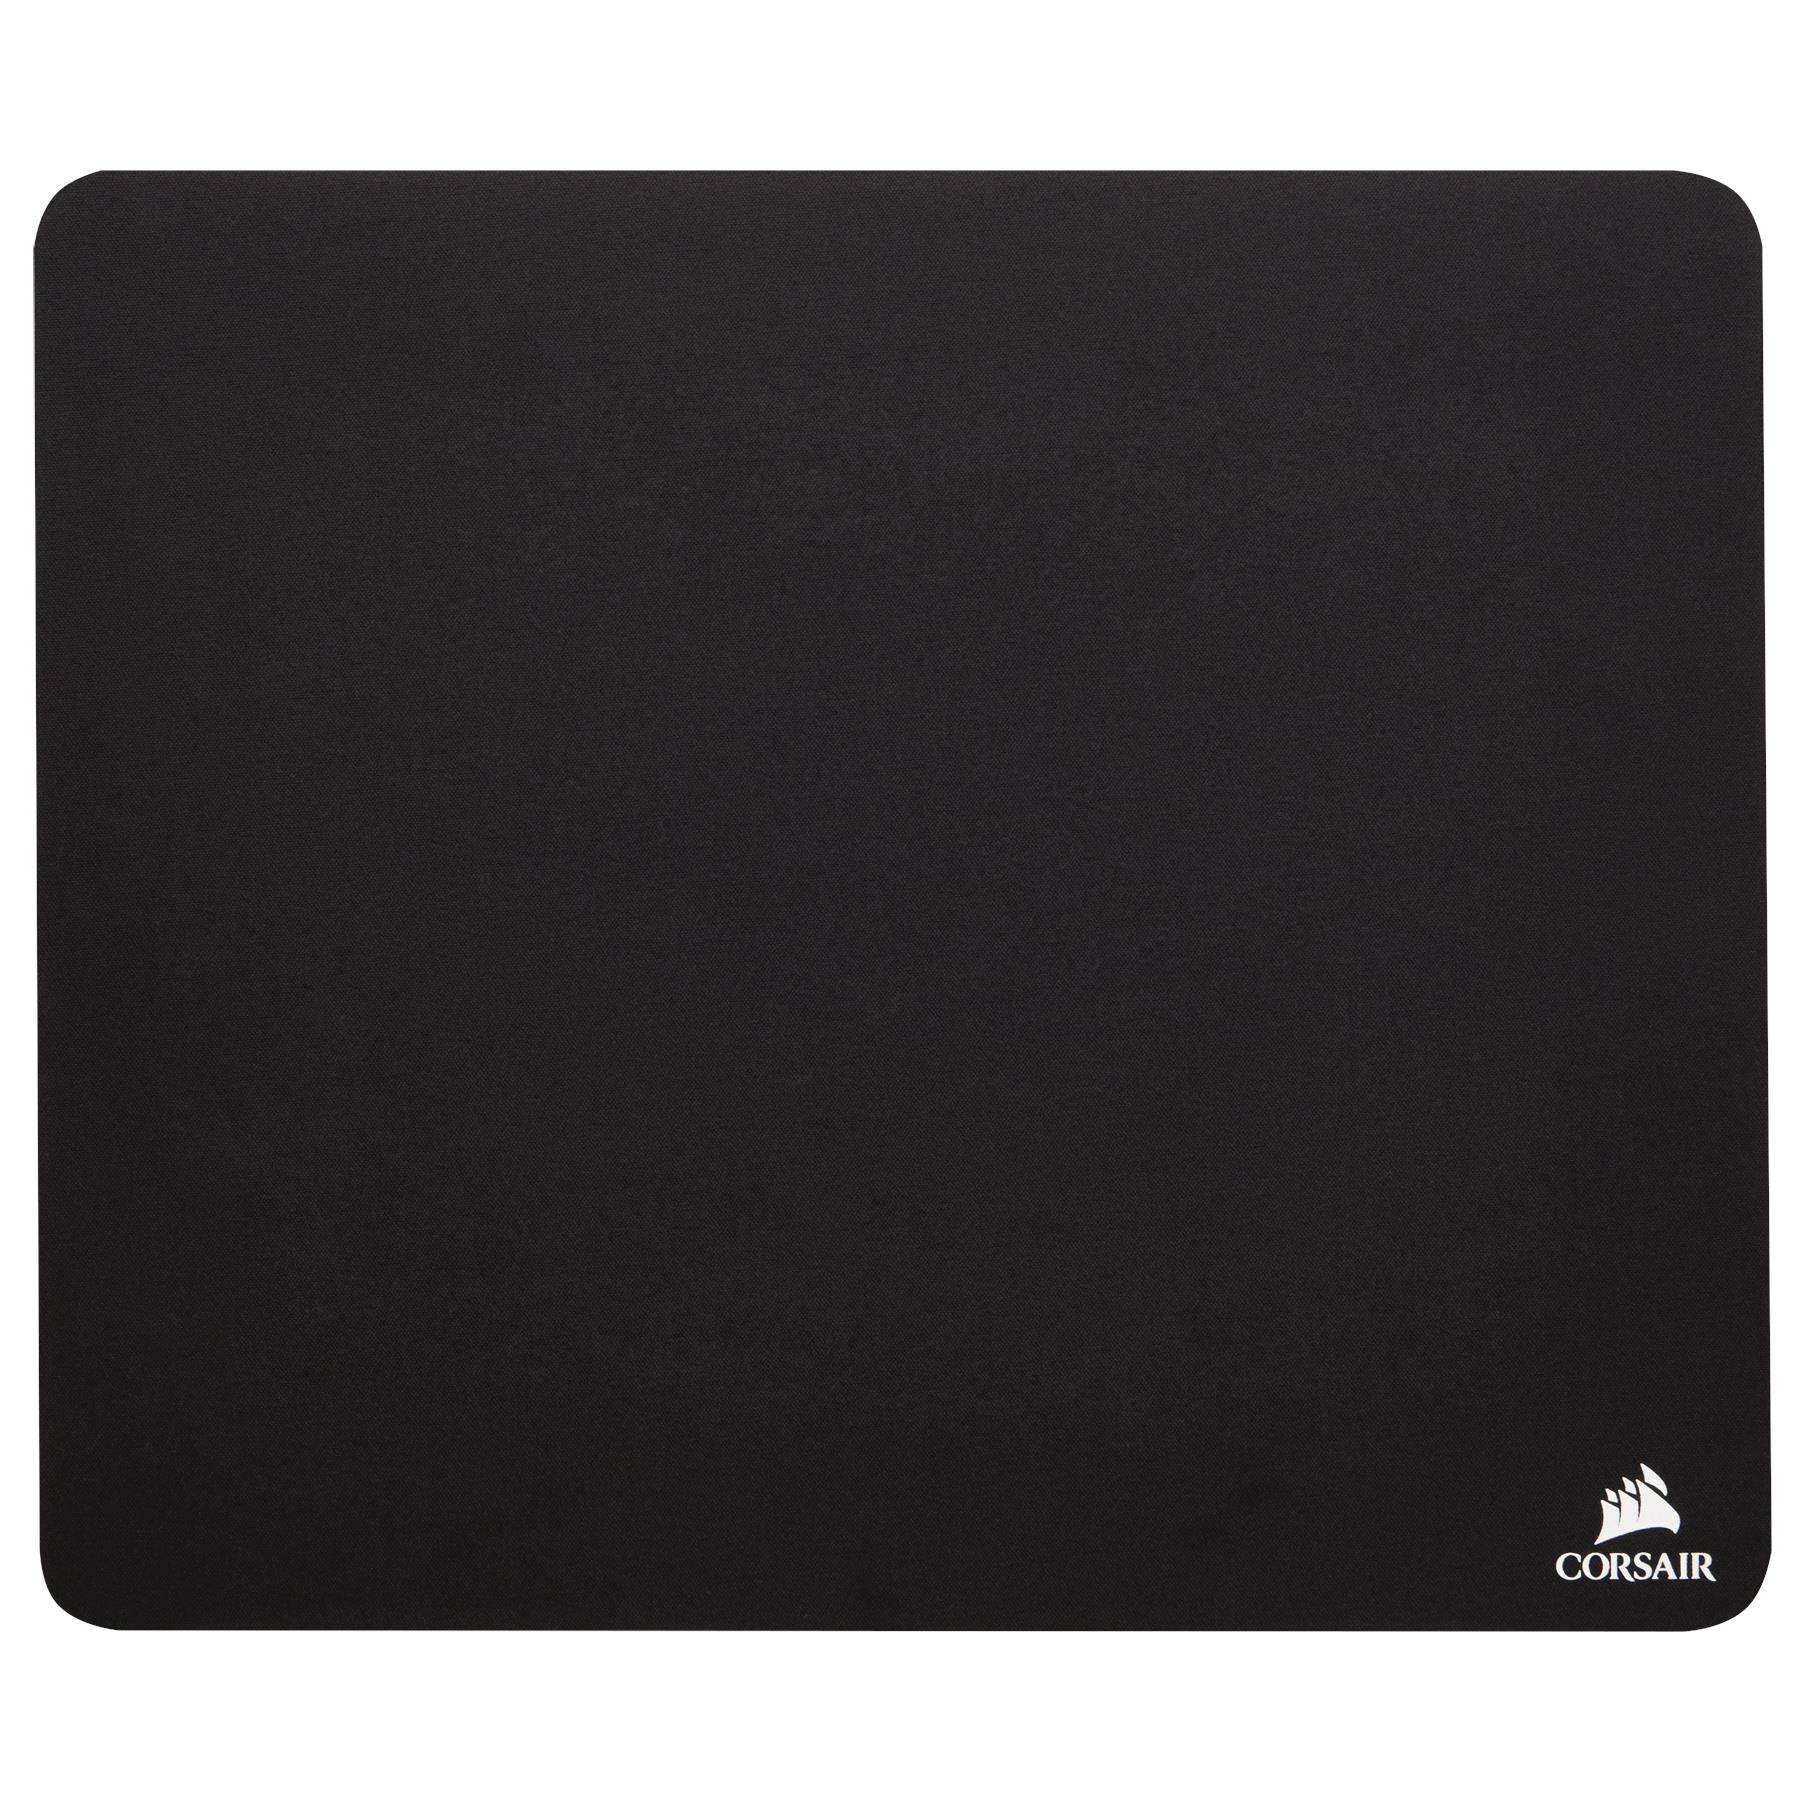 corsair gaming mm100 cloth mouse pad